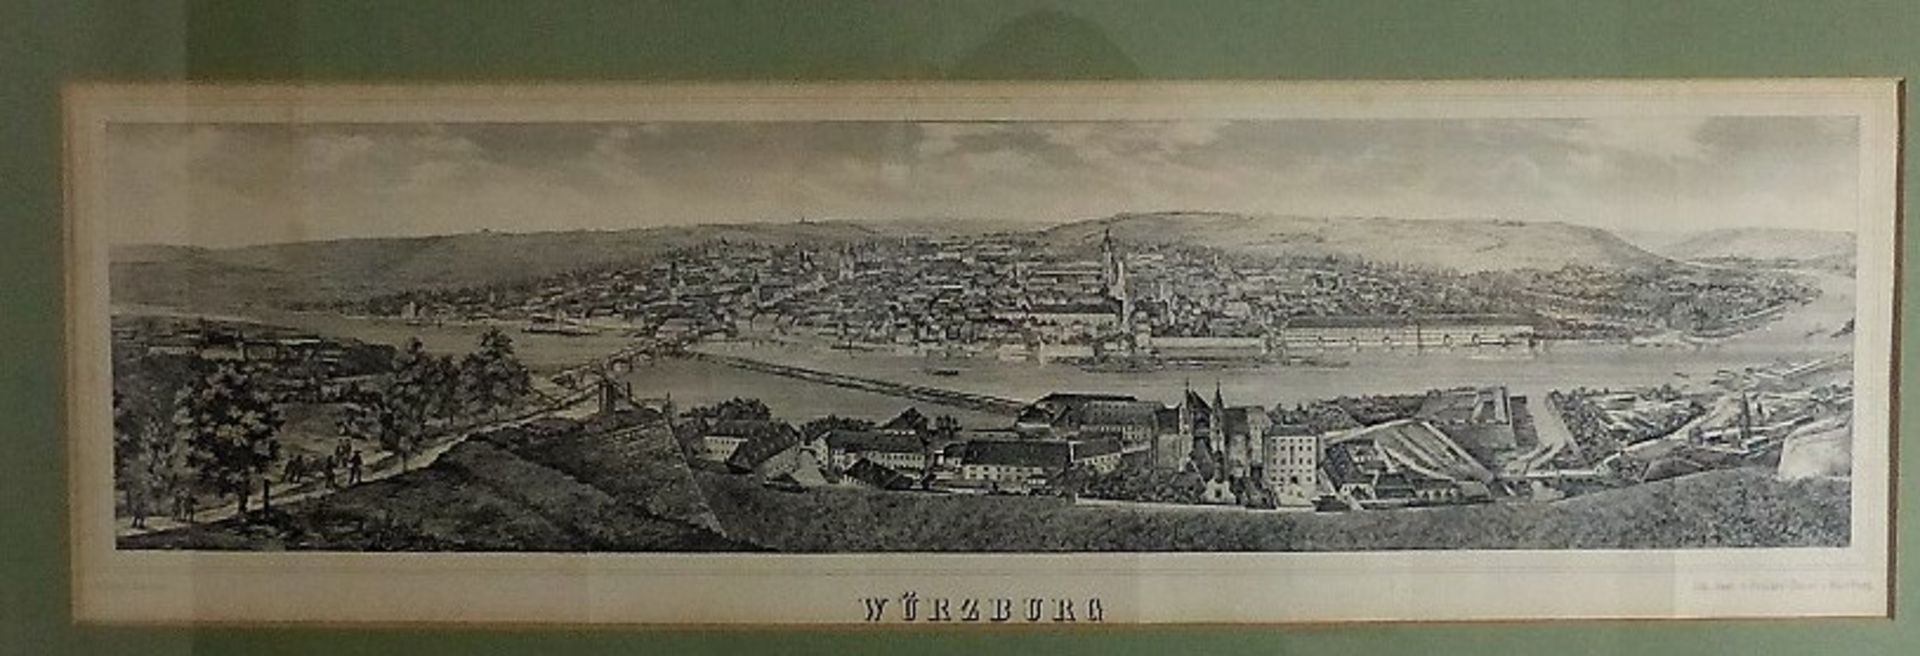 Schöner, Wilhelm, Lithographie 1852, Panoramaansicht der Stadt Würzburg mit dem Maintal